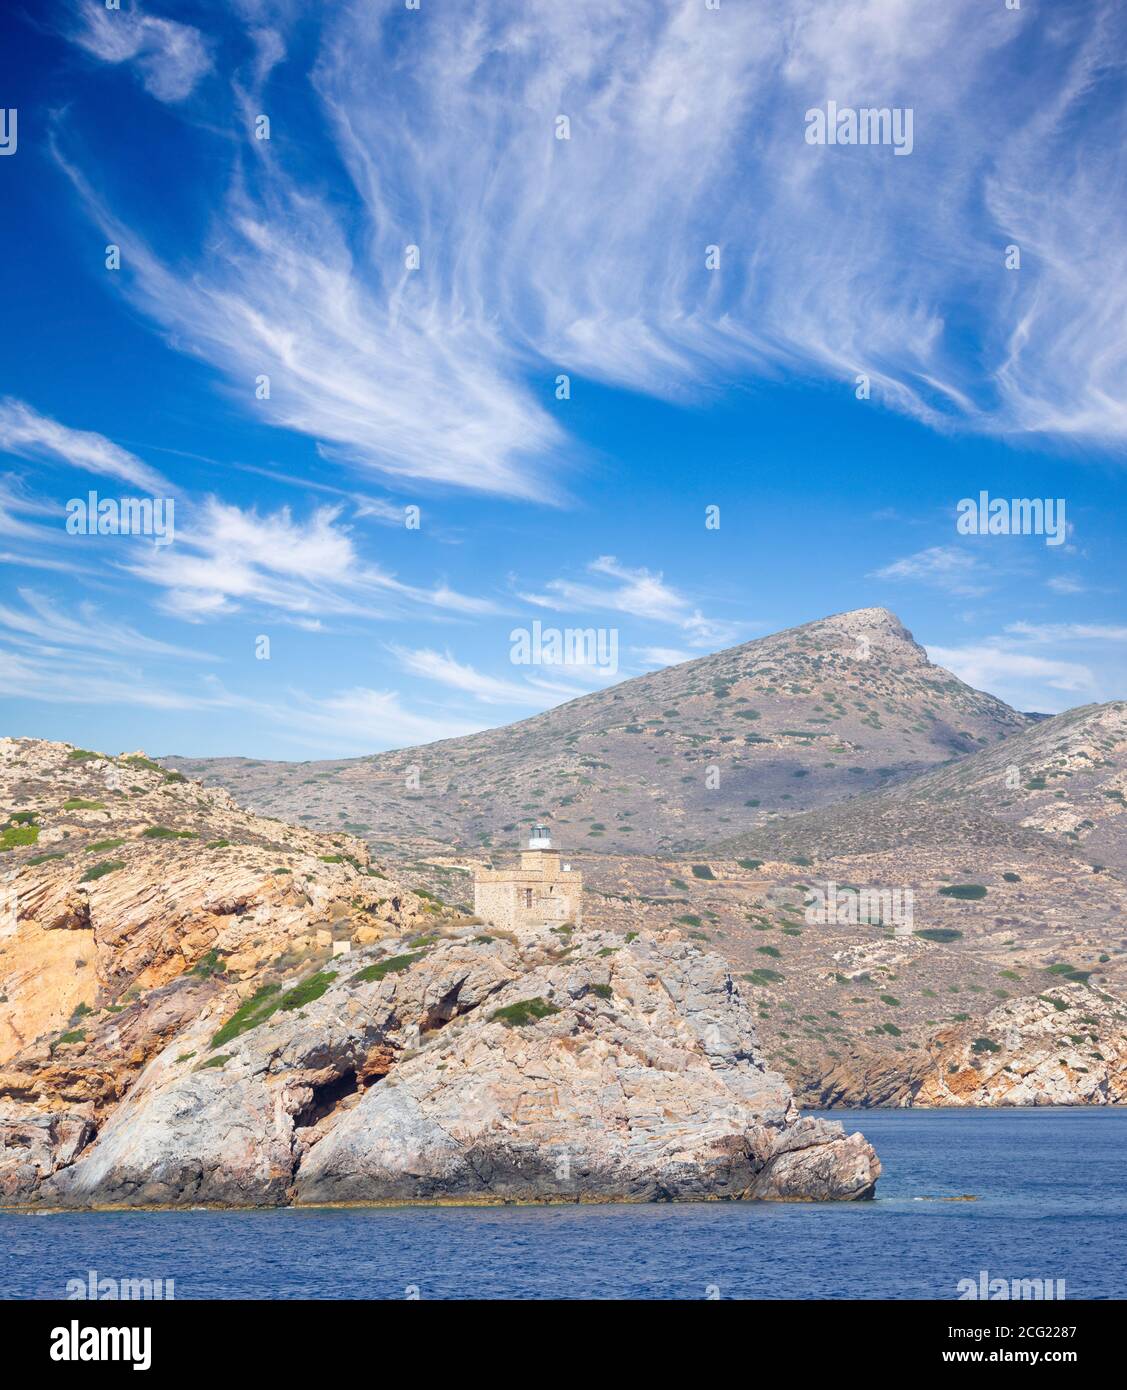 Le phare de l'île grecque d'Ios dans le groupe des Cyclades dans la mer Égée Banque D'Images